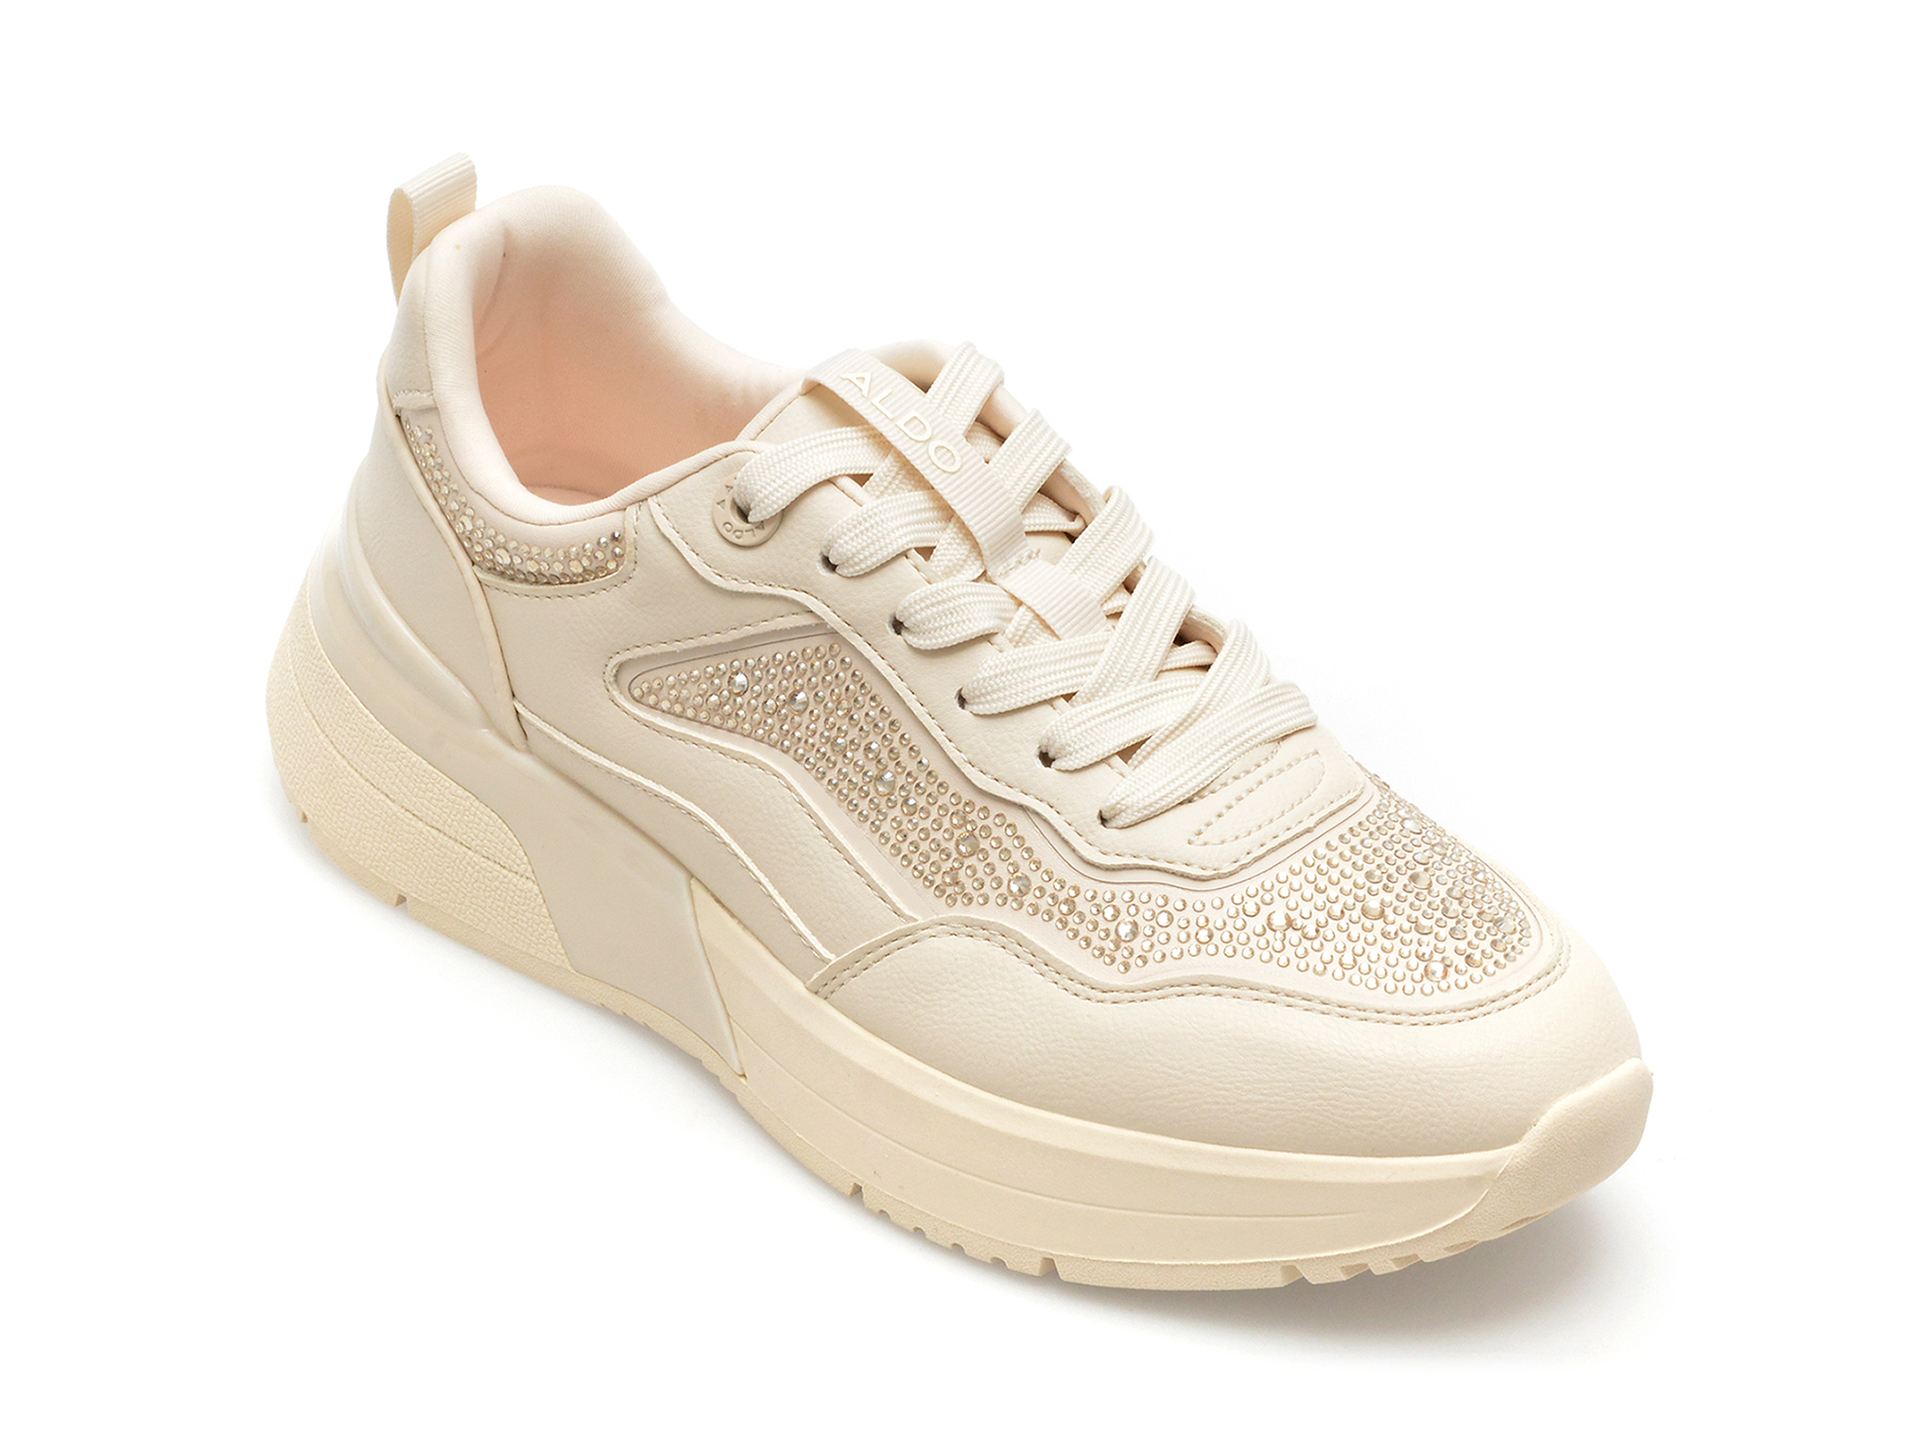 Poze Pantofi ALDO albi, DYLANA981, din piele ecologica